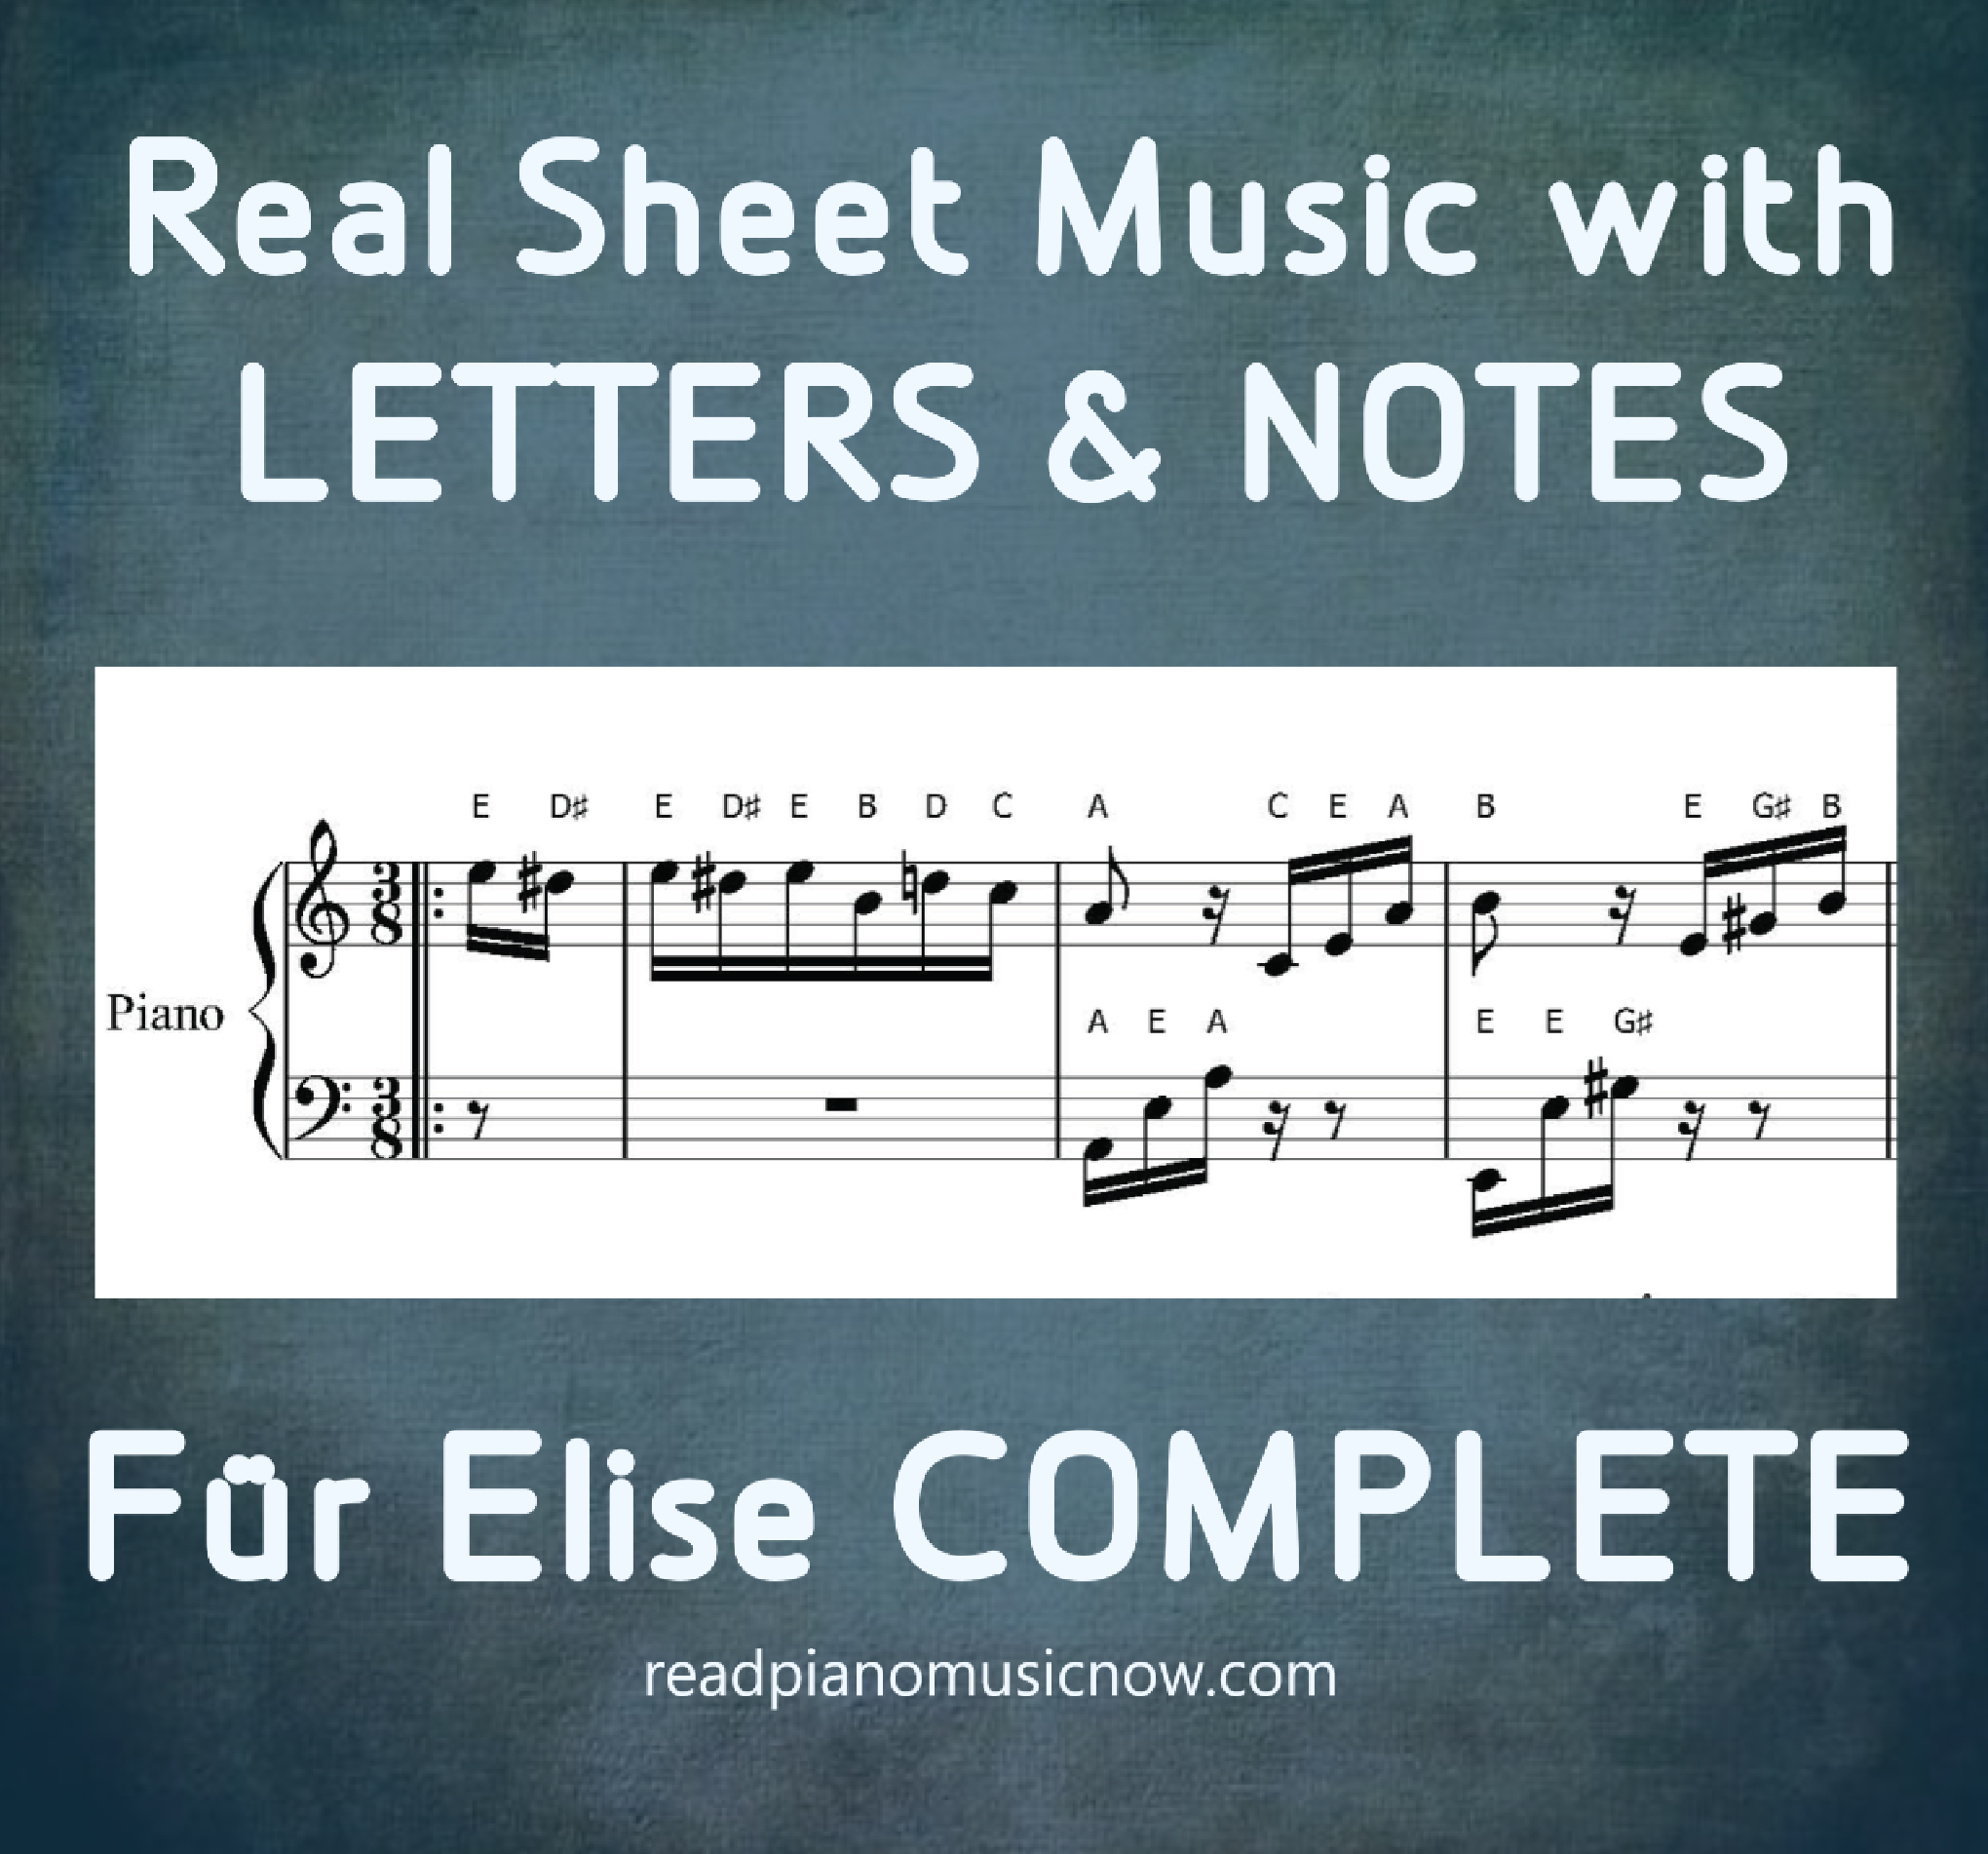 贝多芬的 Fur Elise - 带字母的钢琴乐谱 - 产品图片。